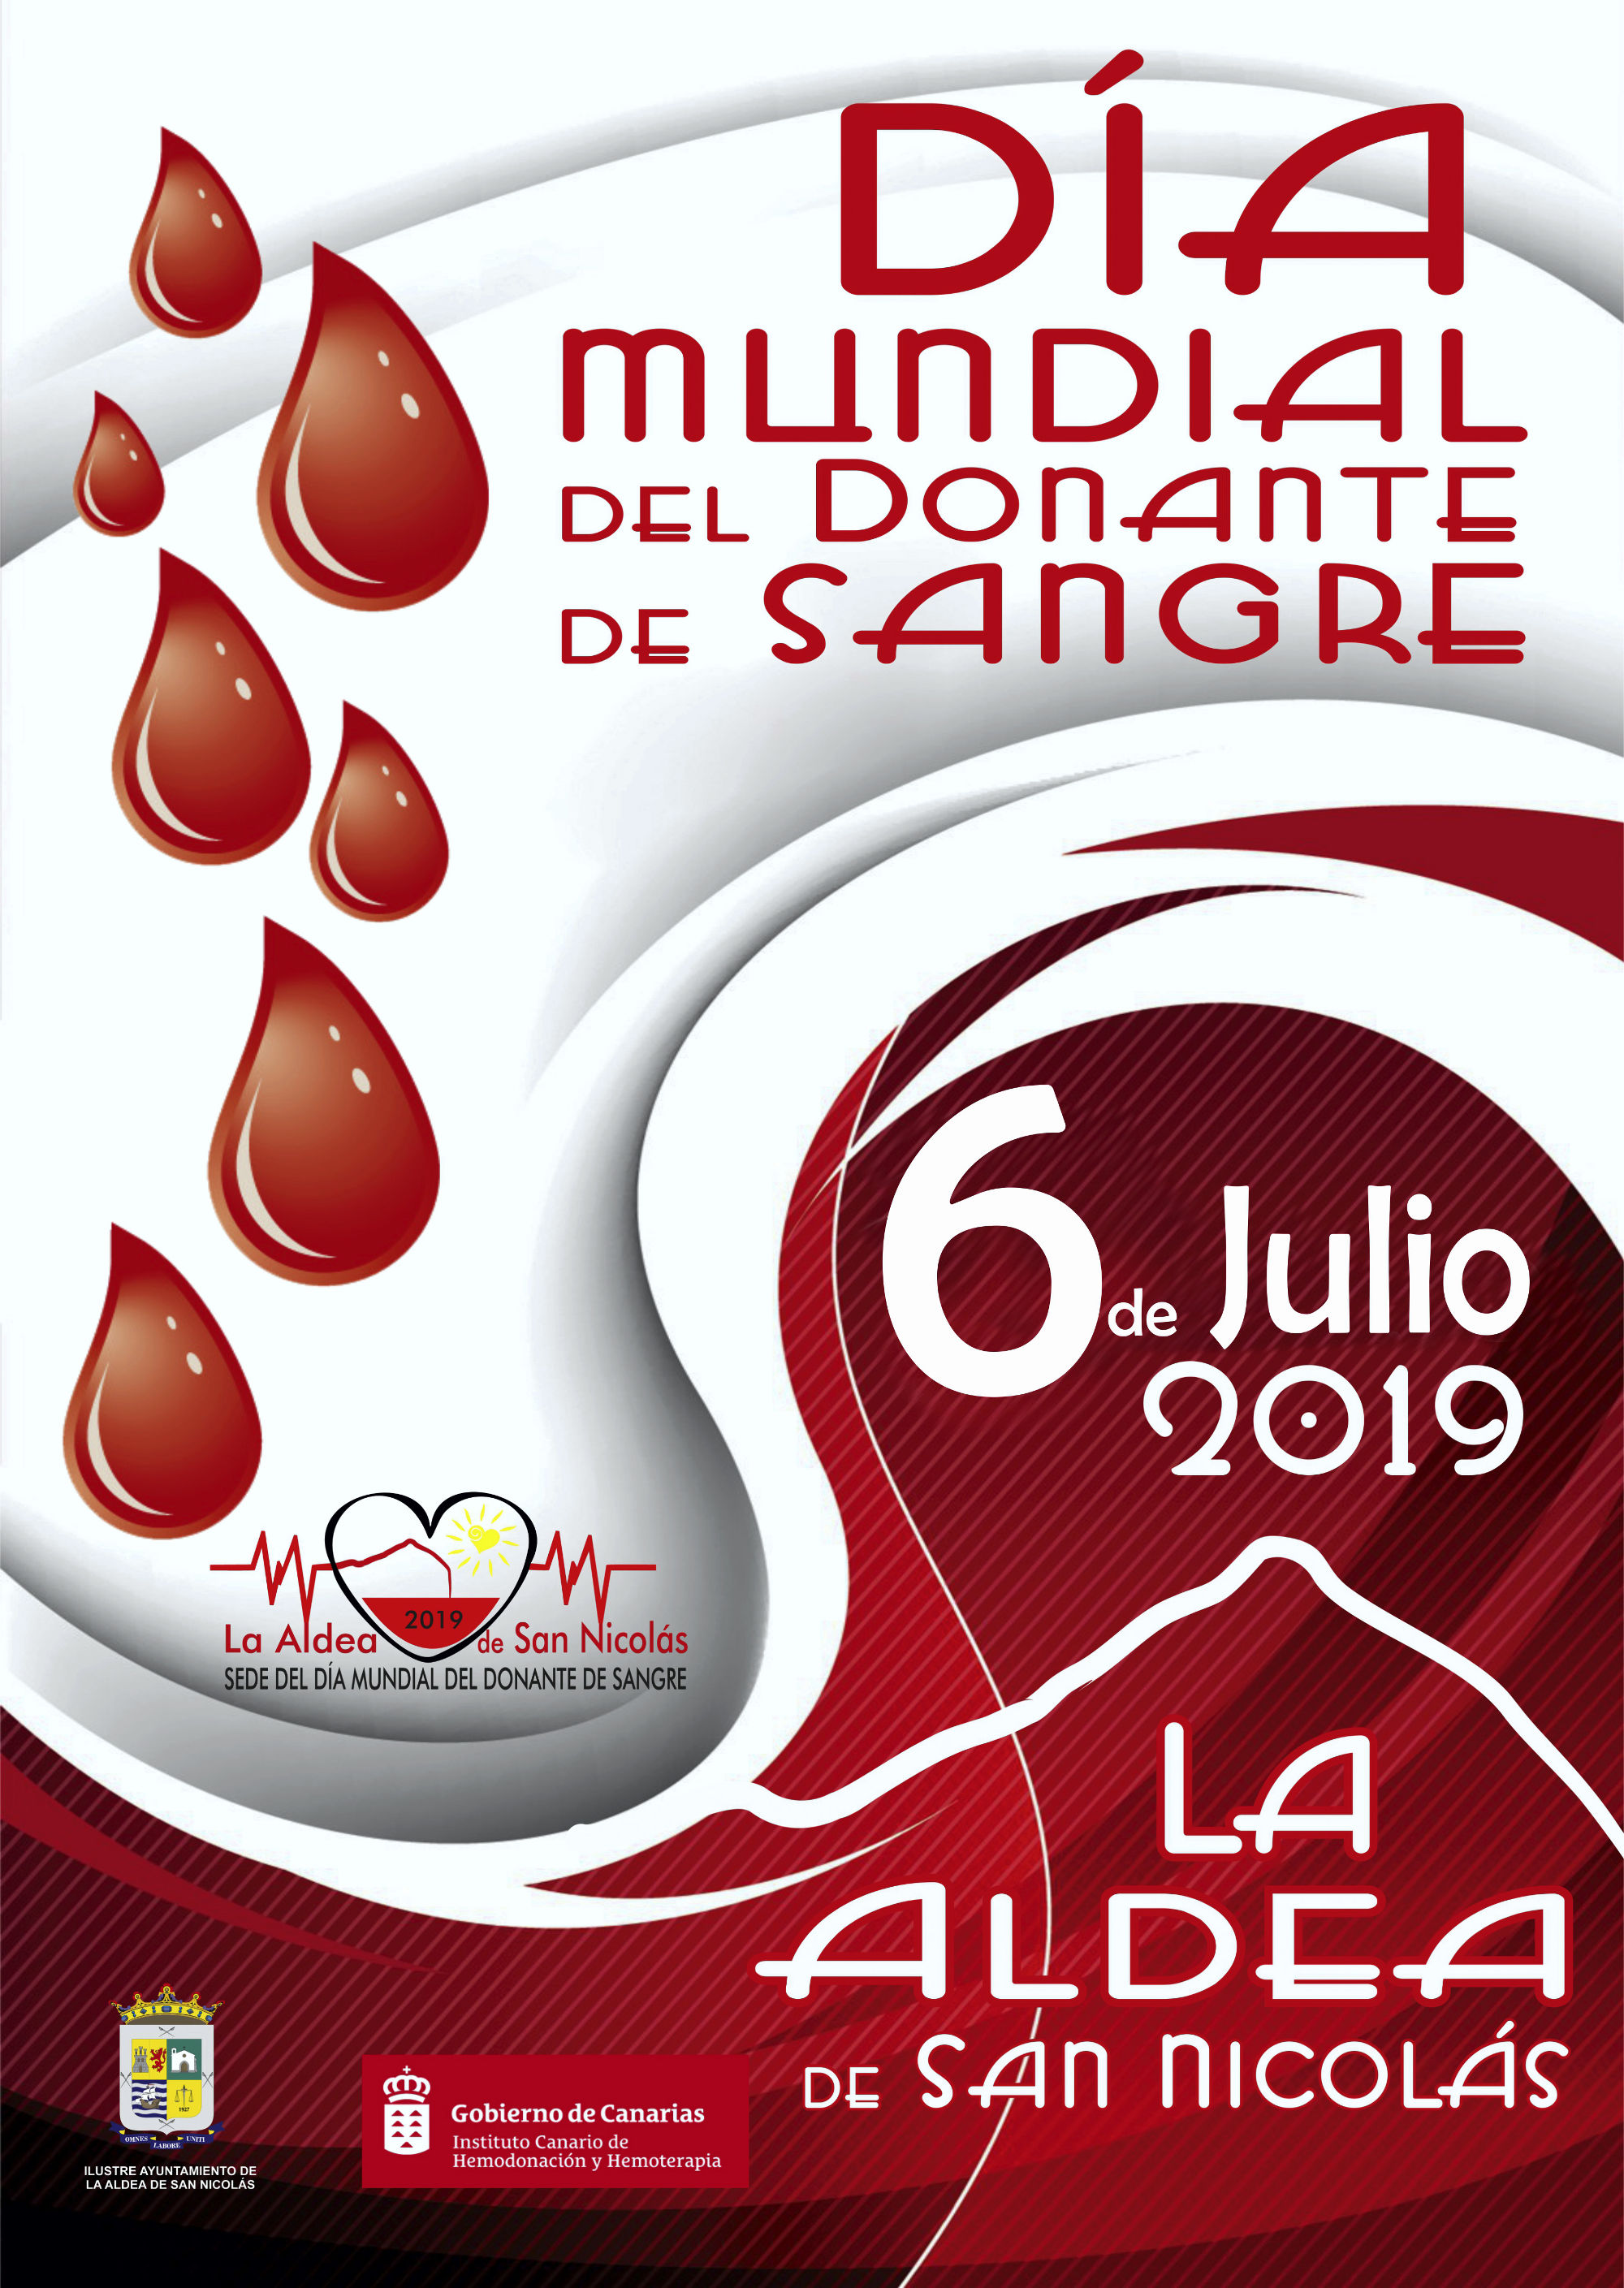 El ICHH celebra este sábado el Día Mundial del Donante de Sangre en La Aldea de San Nicolás